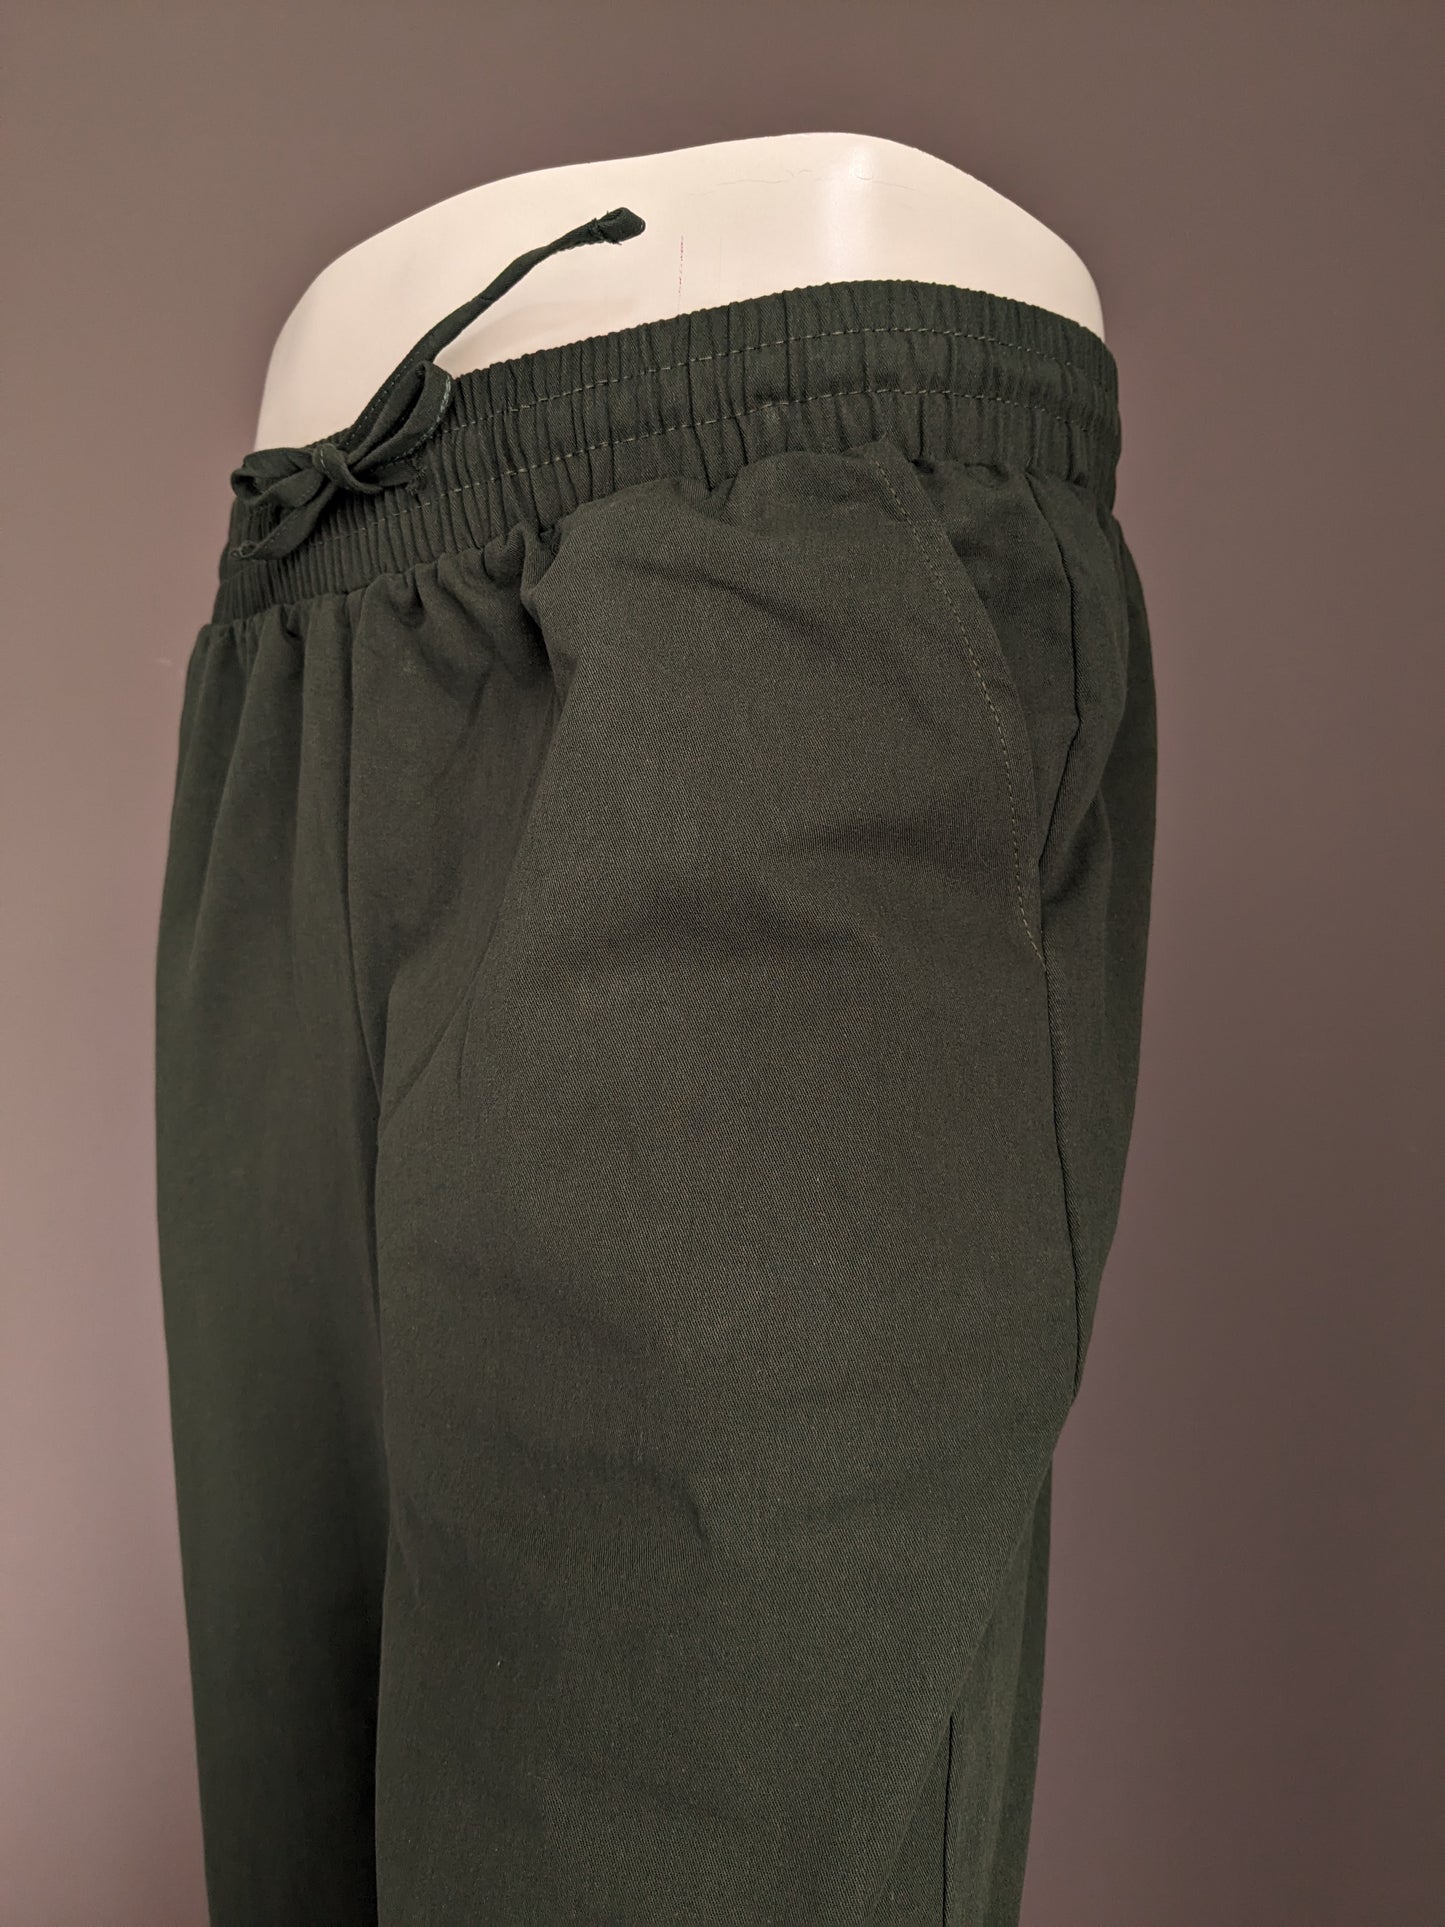 Pantalon décontracté sans marque avec bande élastique. Vert coloré. Taille